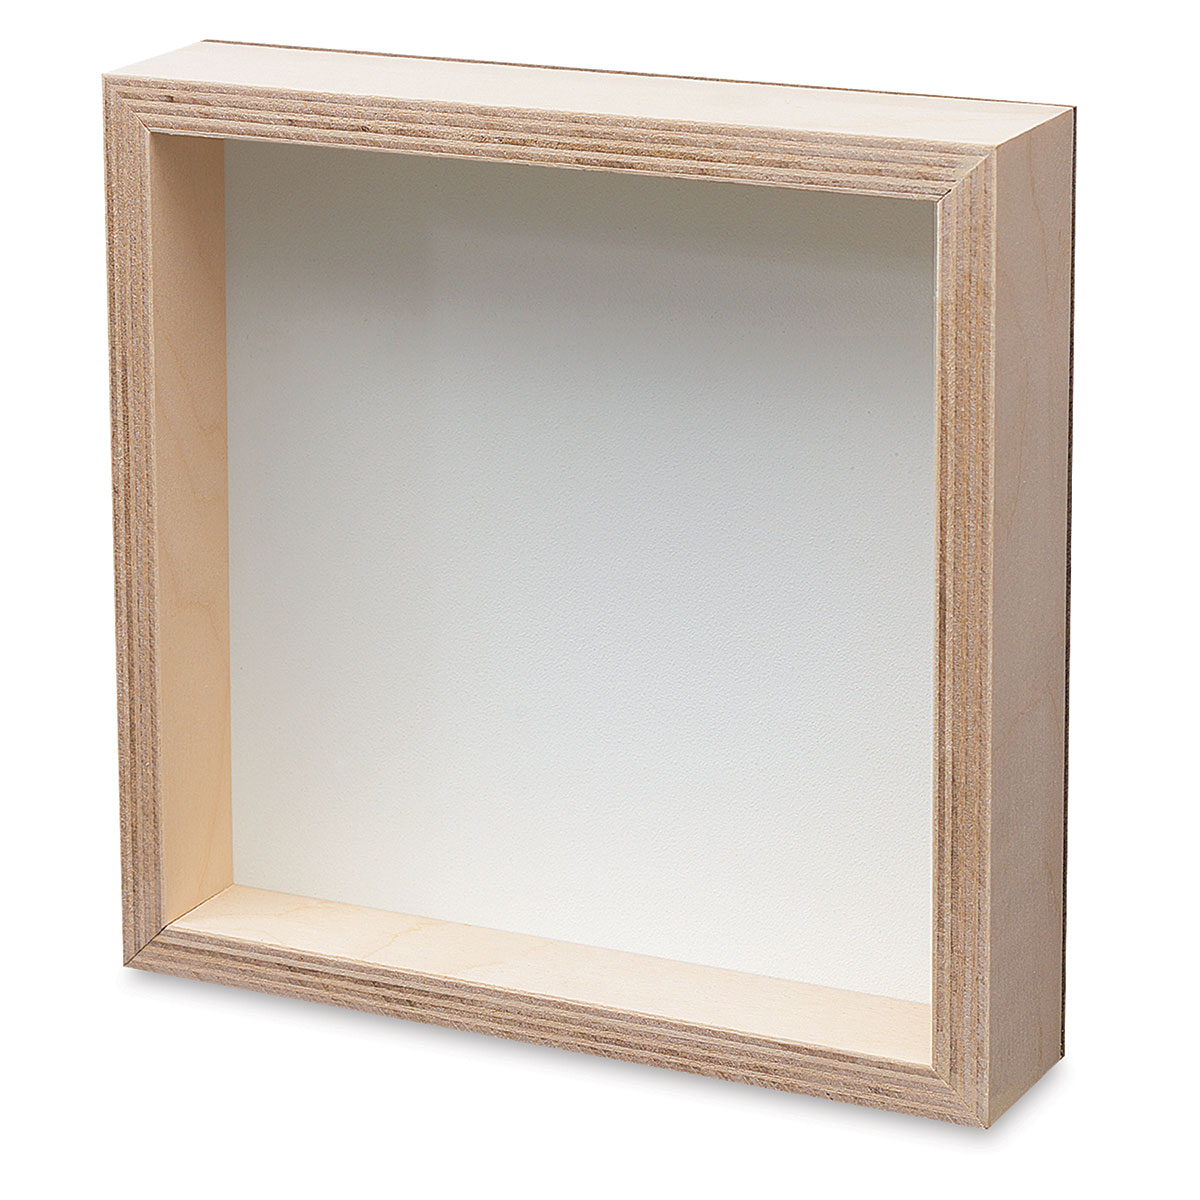 DIY Unfinished Wood Box Frames